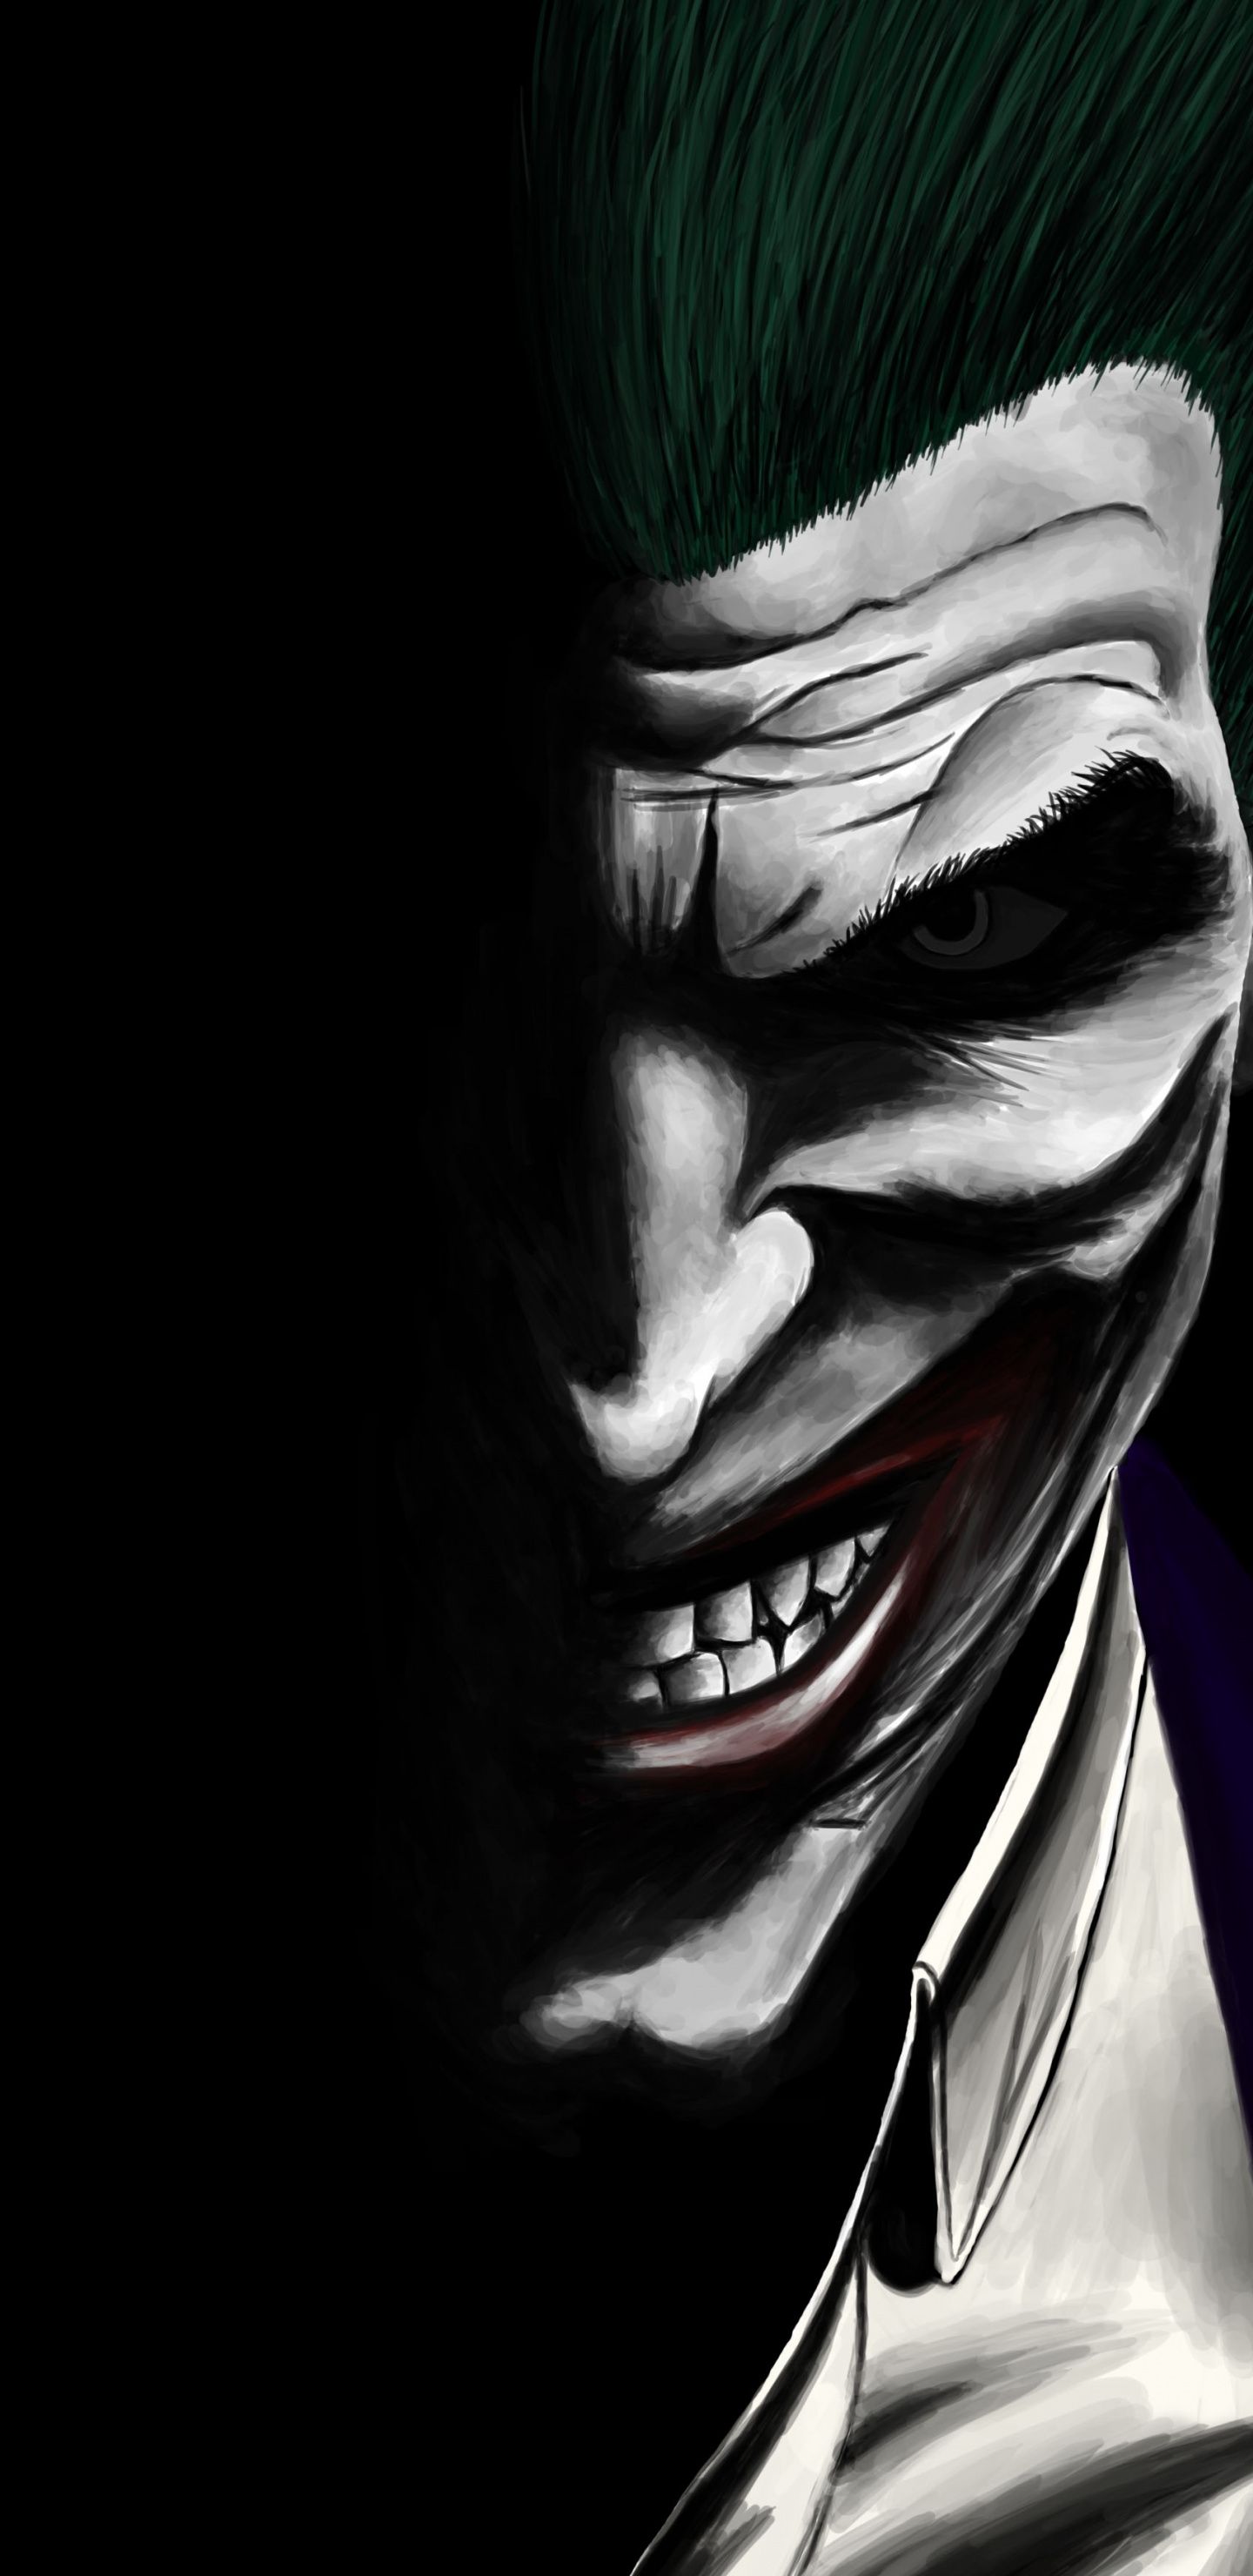 Joker, Dark, Dc Comics, Villain, Artwork, Wallpaper Wallpaper For iPhone X